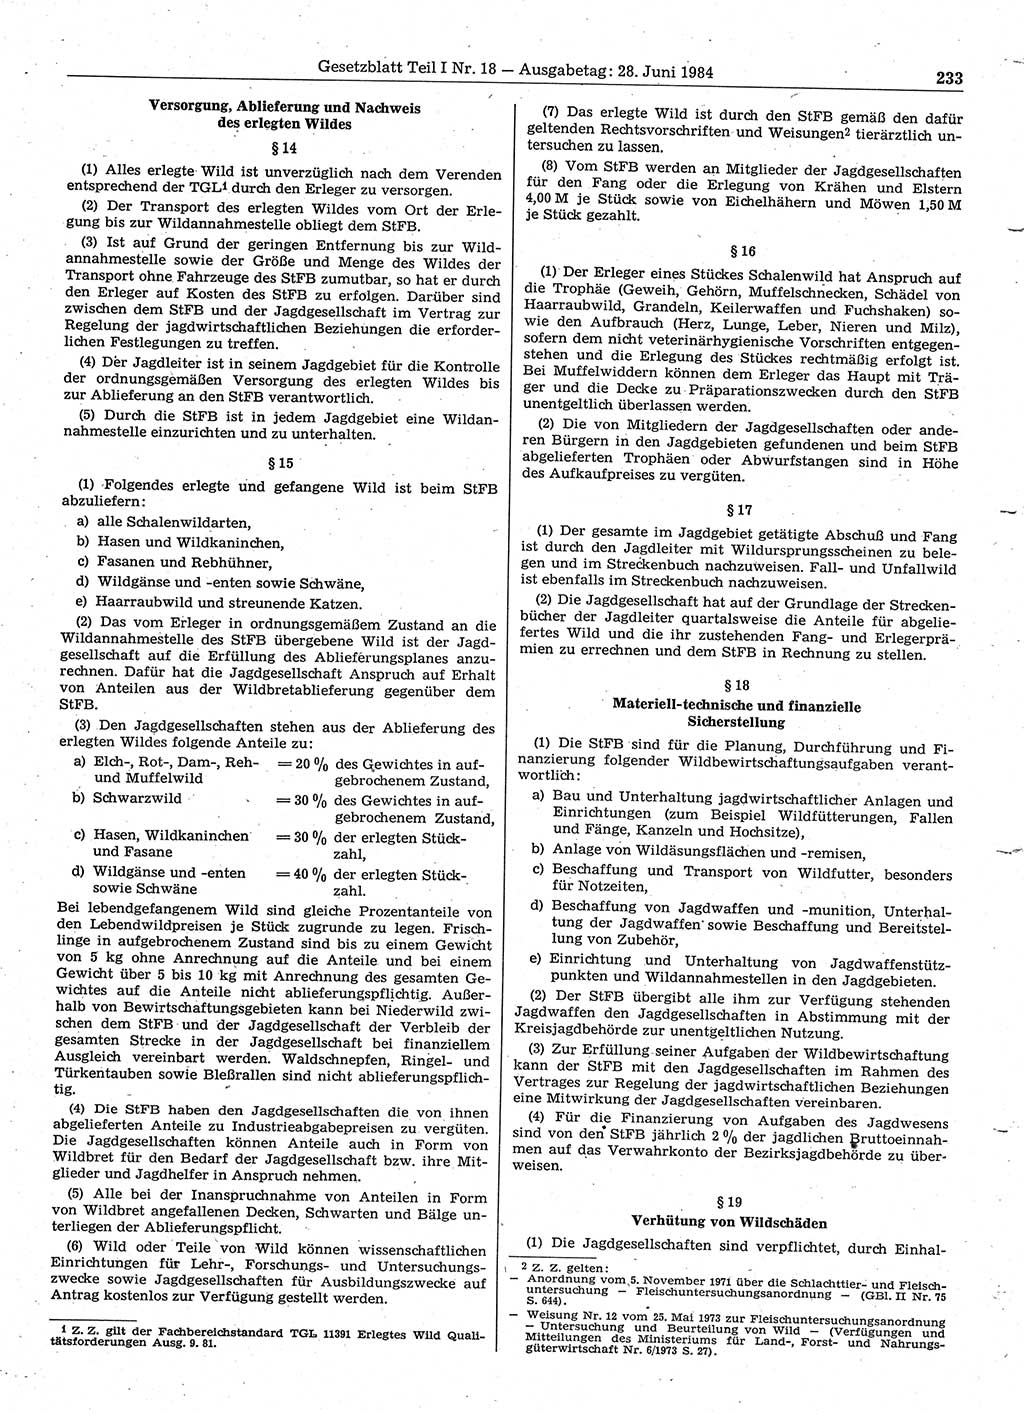 Gesetzblatt (GBl.) der Deutschen Demokratischen Republik (DDR) Teil Ⅰ 1984, Seite 233 (GBl. DDR Ⅰ 1984, S. 233)